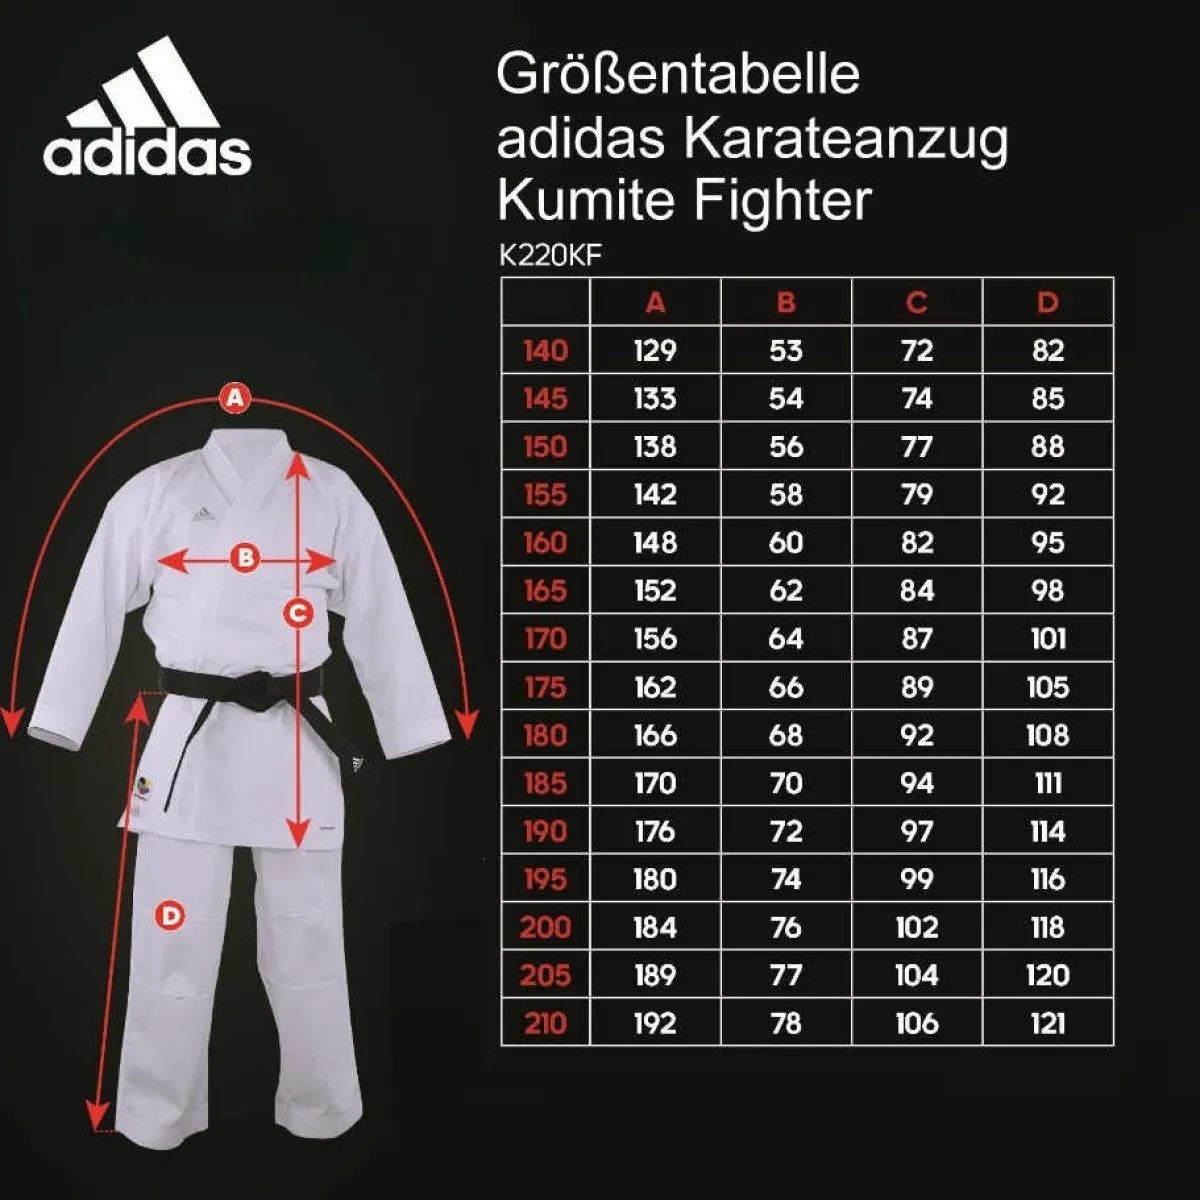 Adidas traje de kárate Fighter